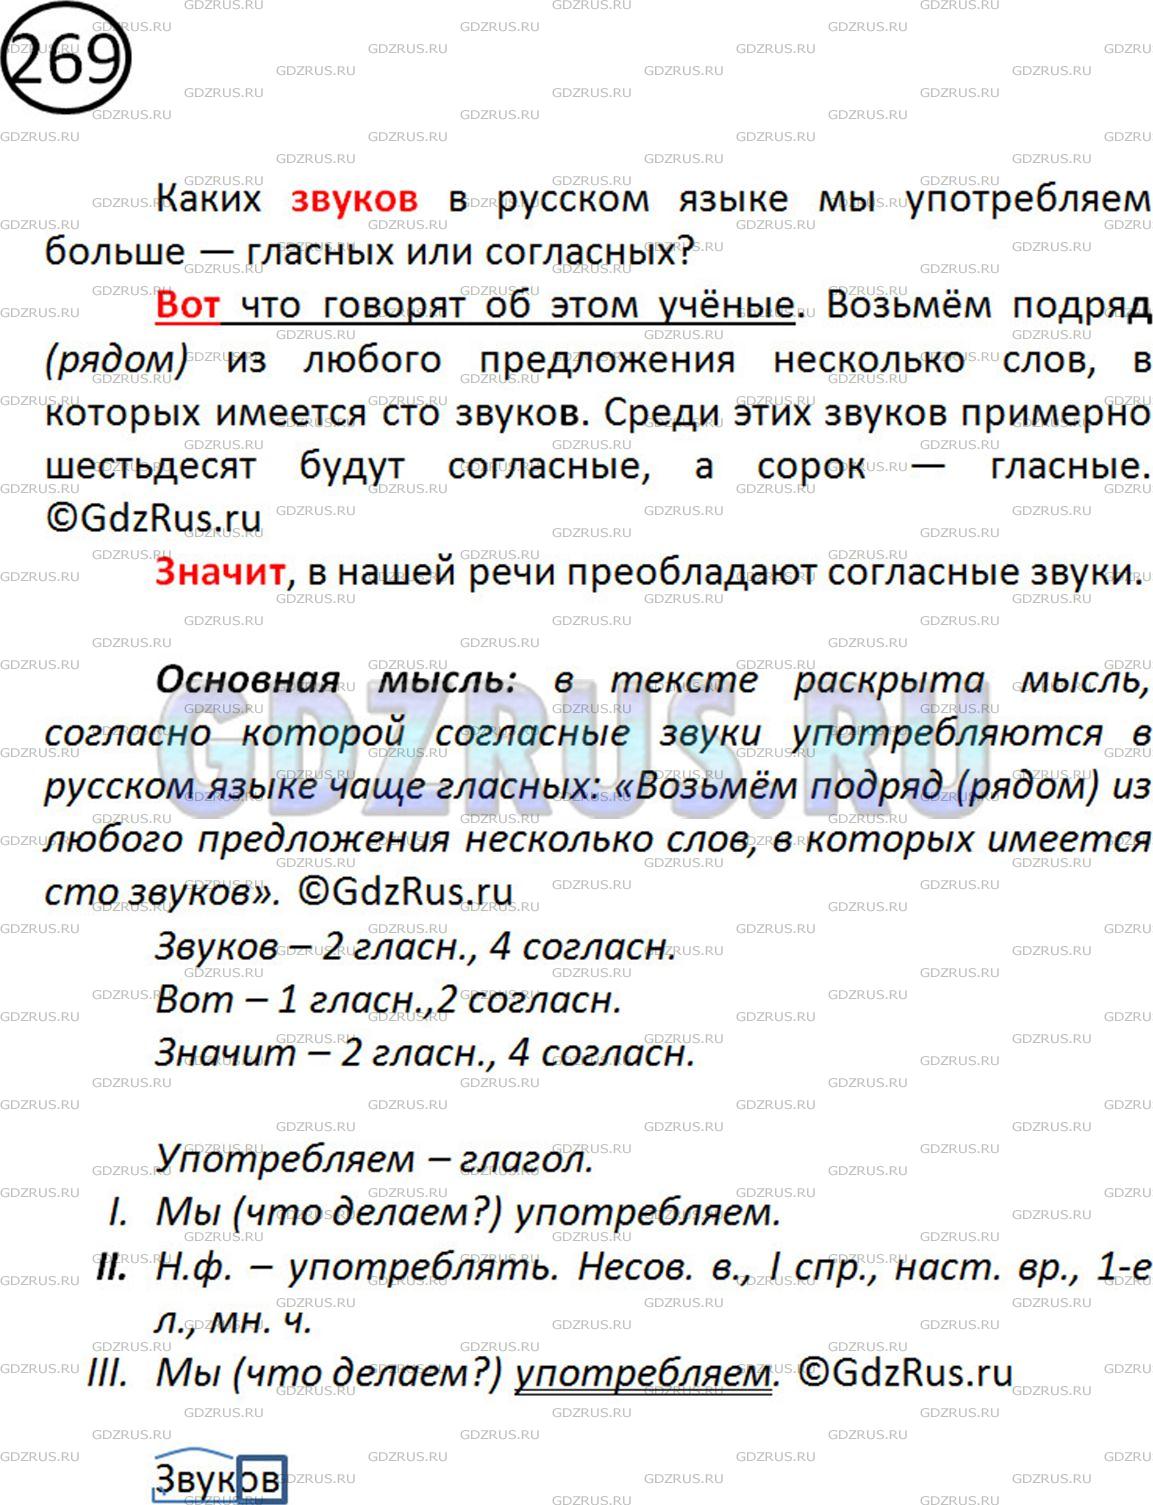 Фото решения 2: ГДЗ по Русскому языку 5 класса: Ладыженская Упр. 269